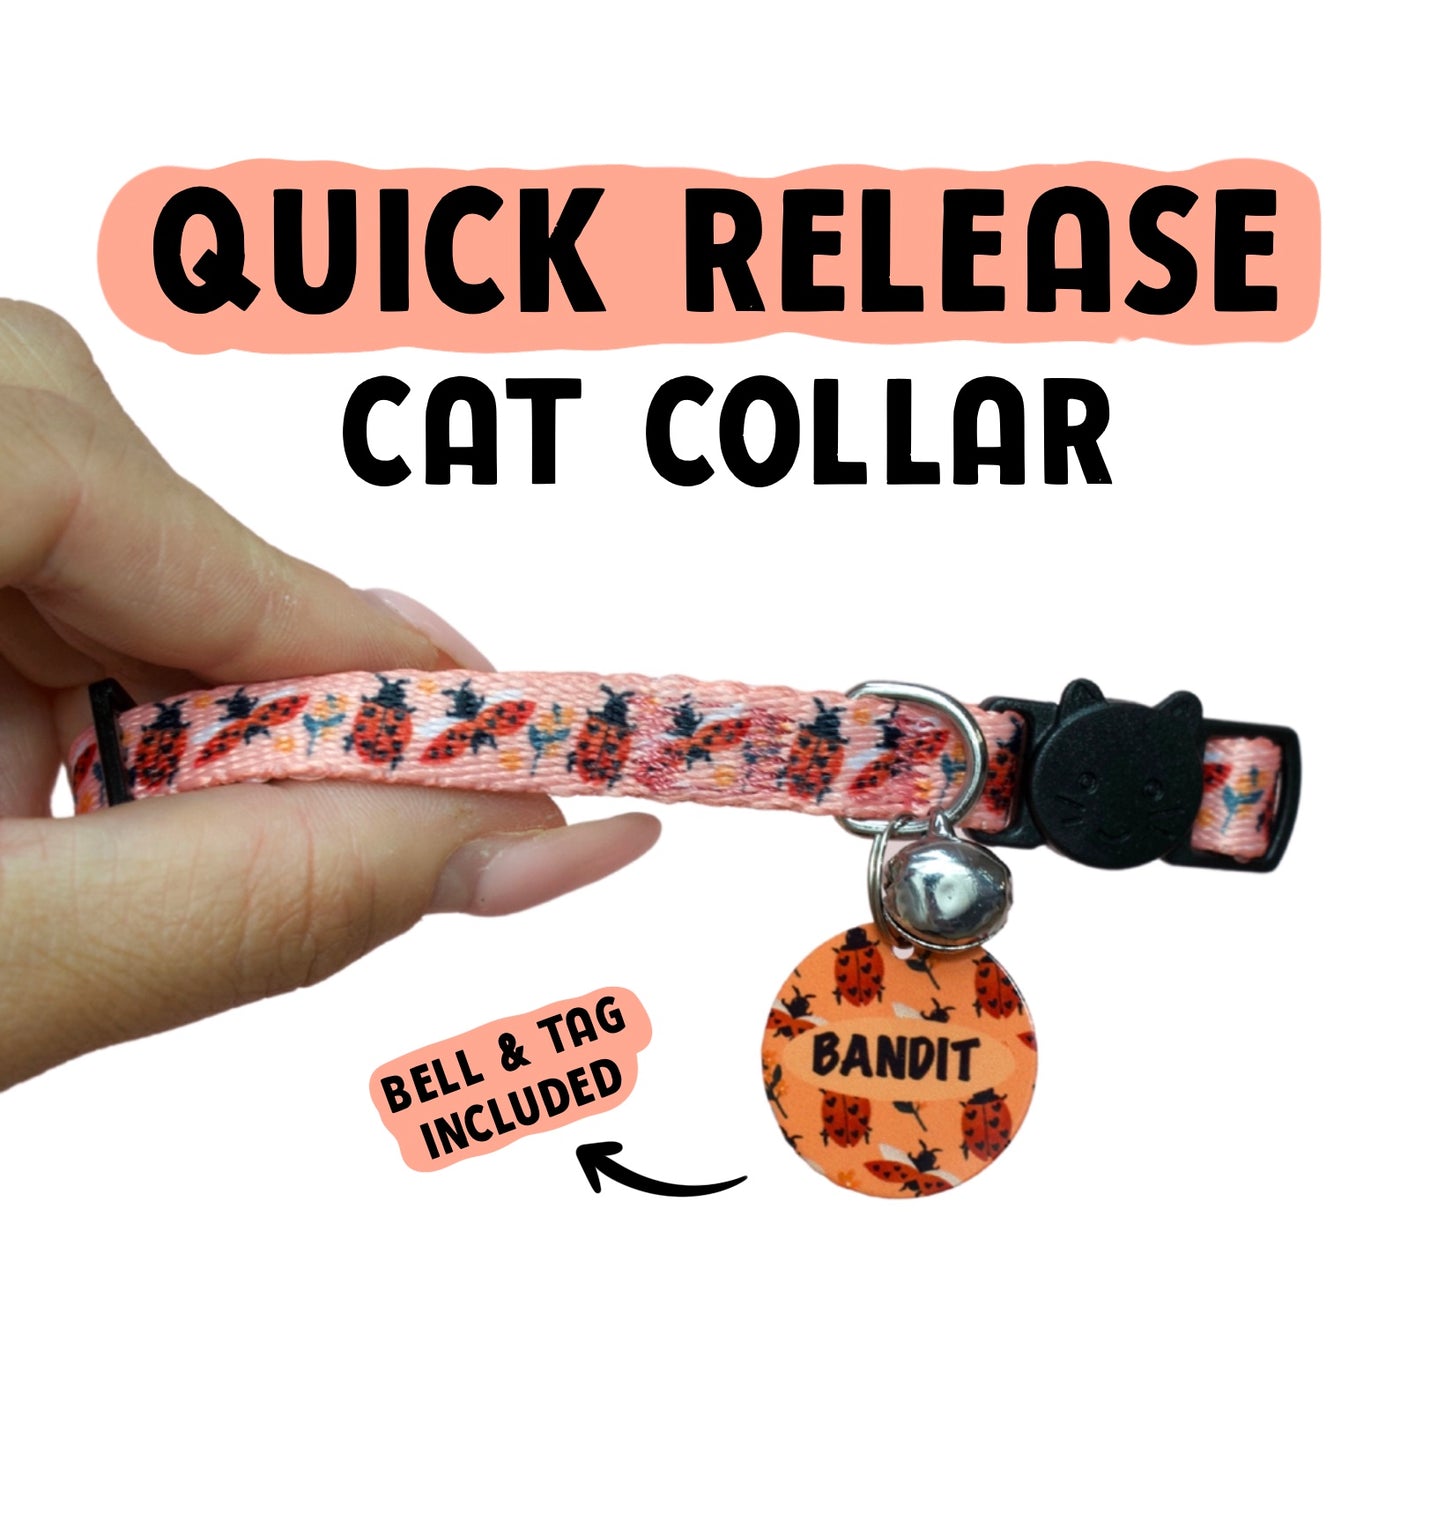 Cat Collars - Snug Like A Ladybug